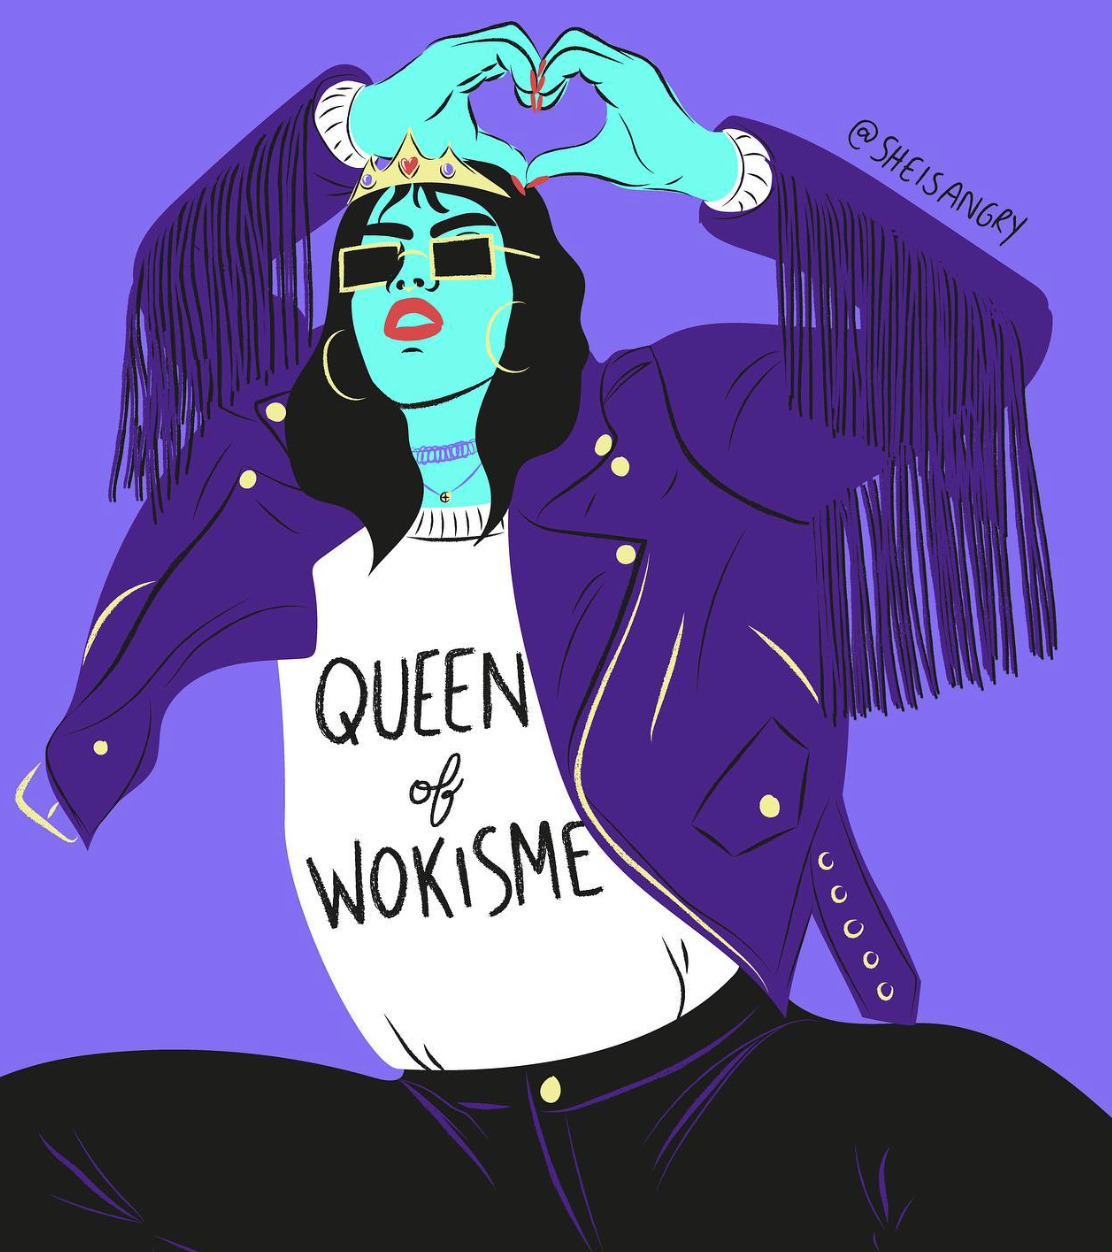 Illustration de Lauren Villiers représentant une femme portant l'inscription "Queen of wokisme" 